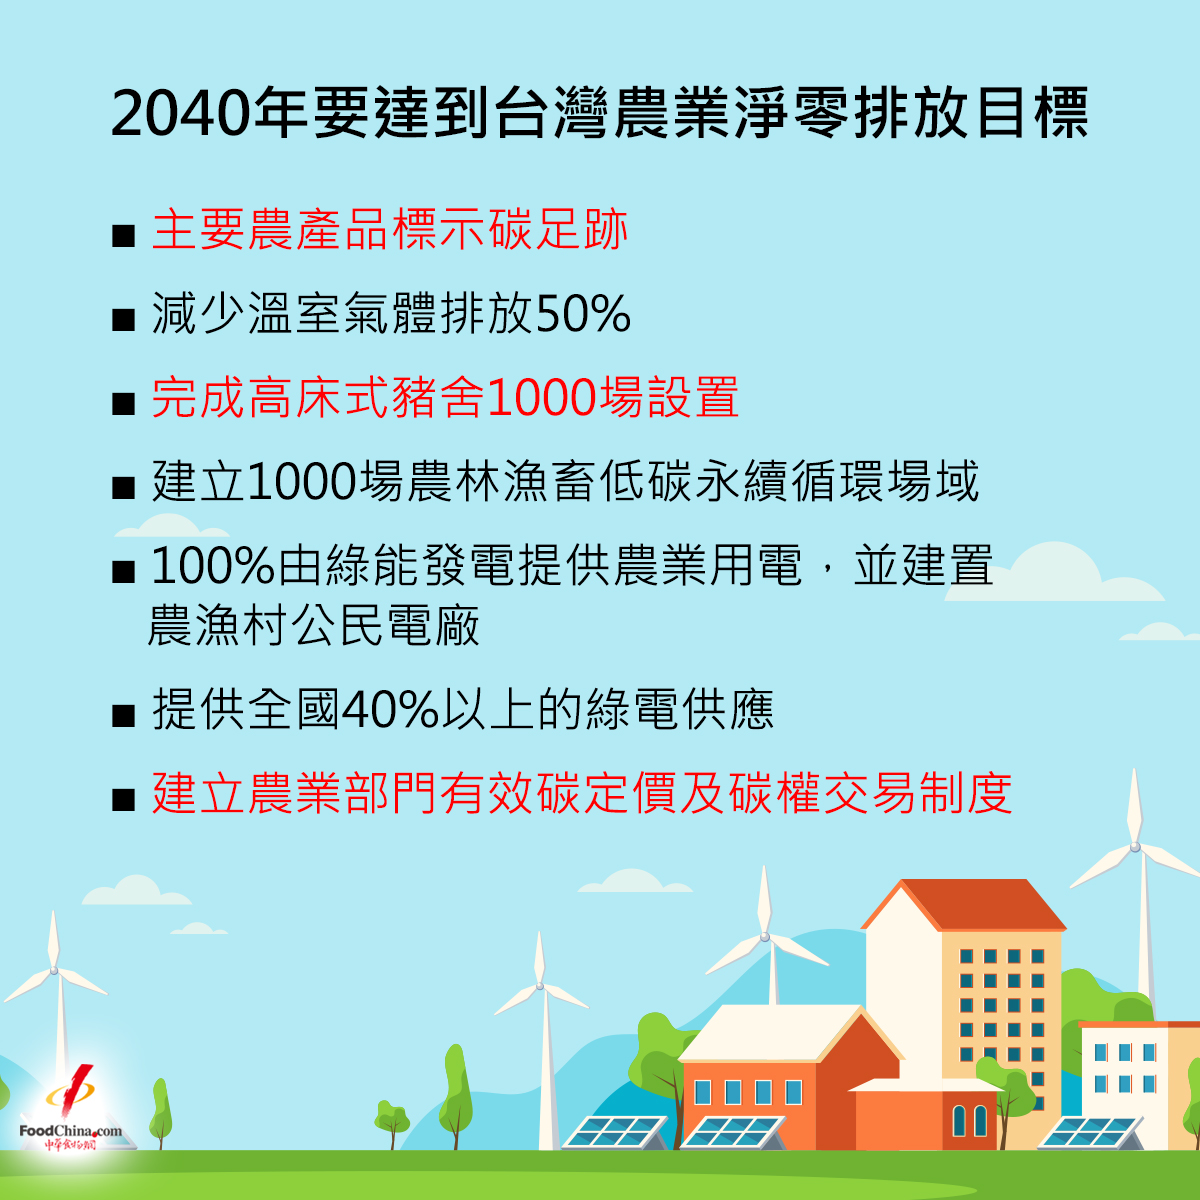 2040年要達到台灣農業淨零排放目標